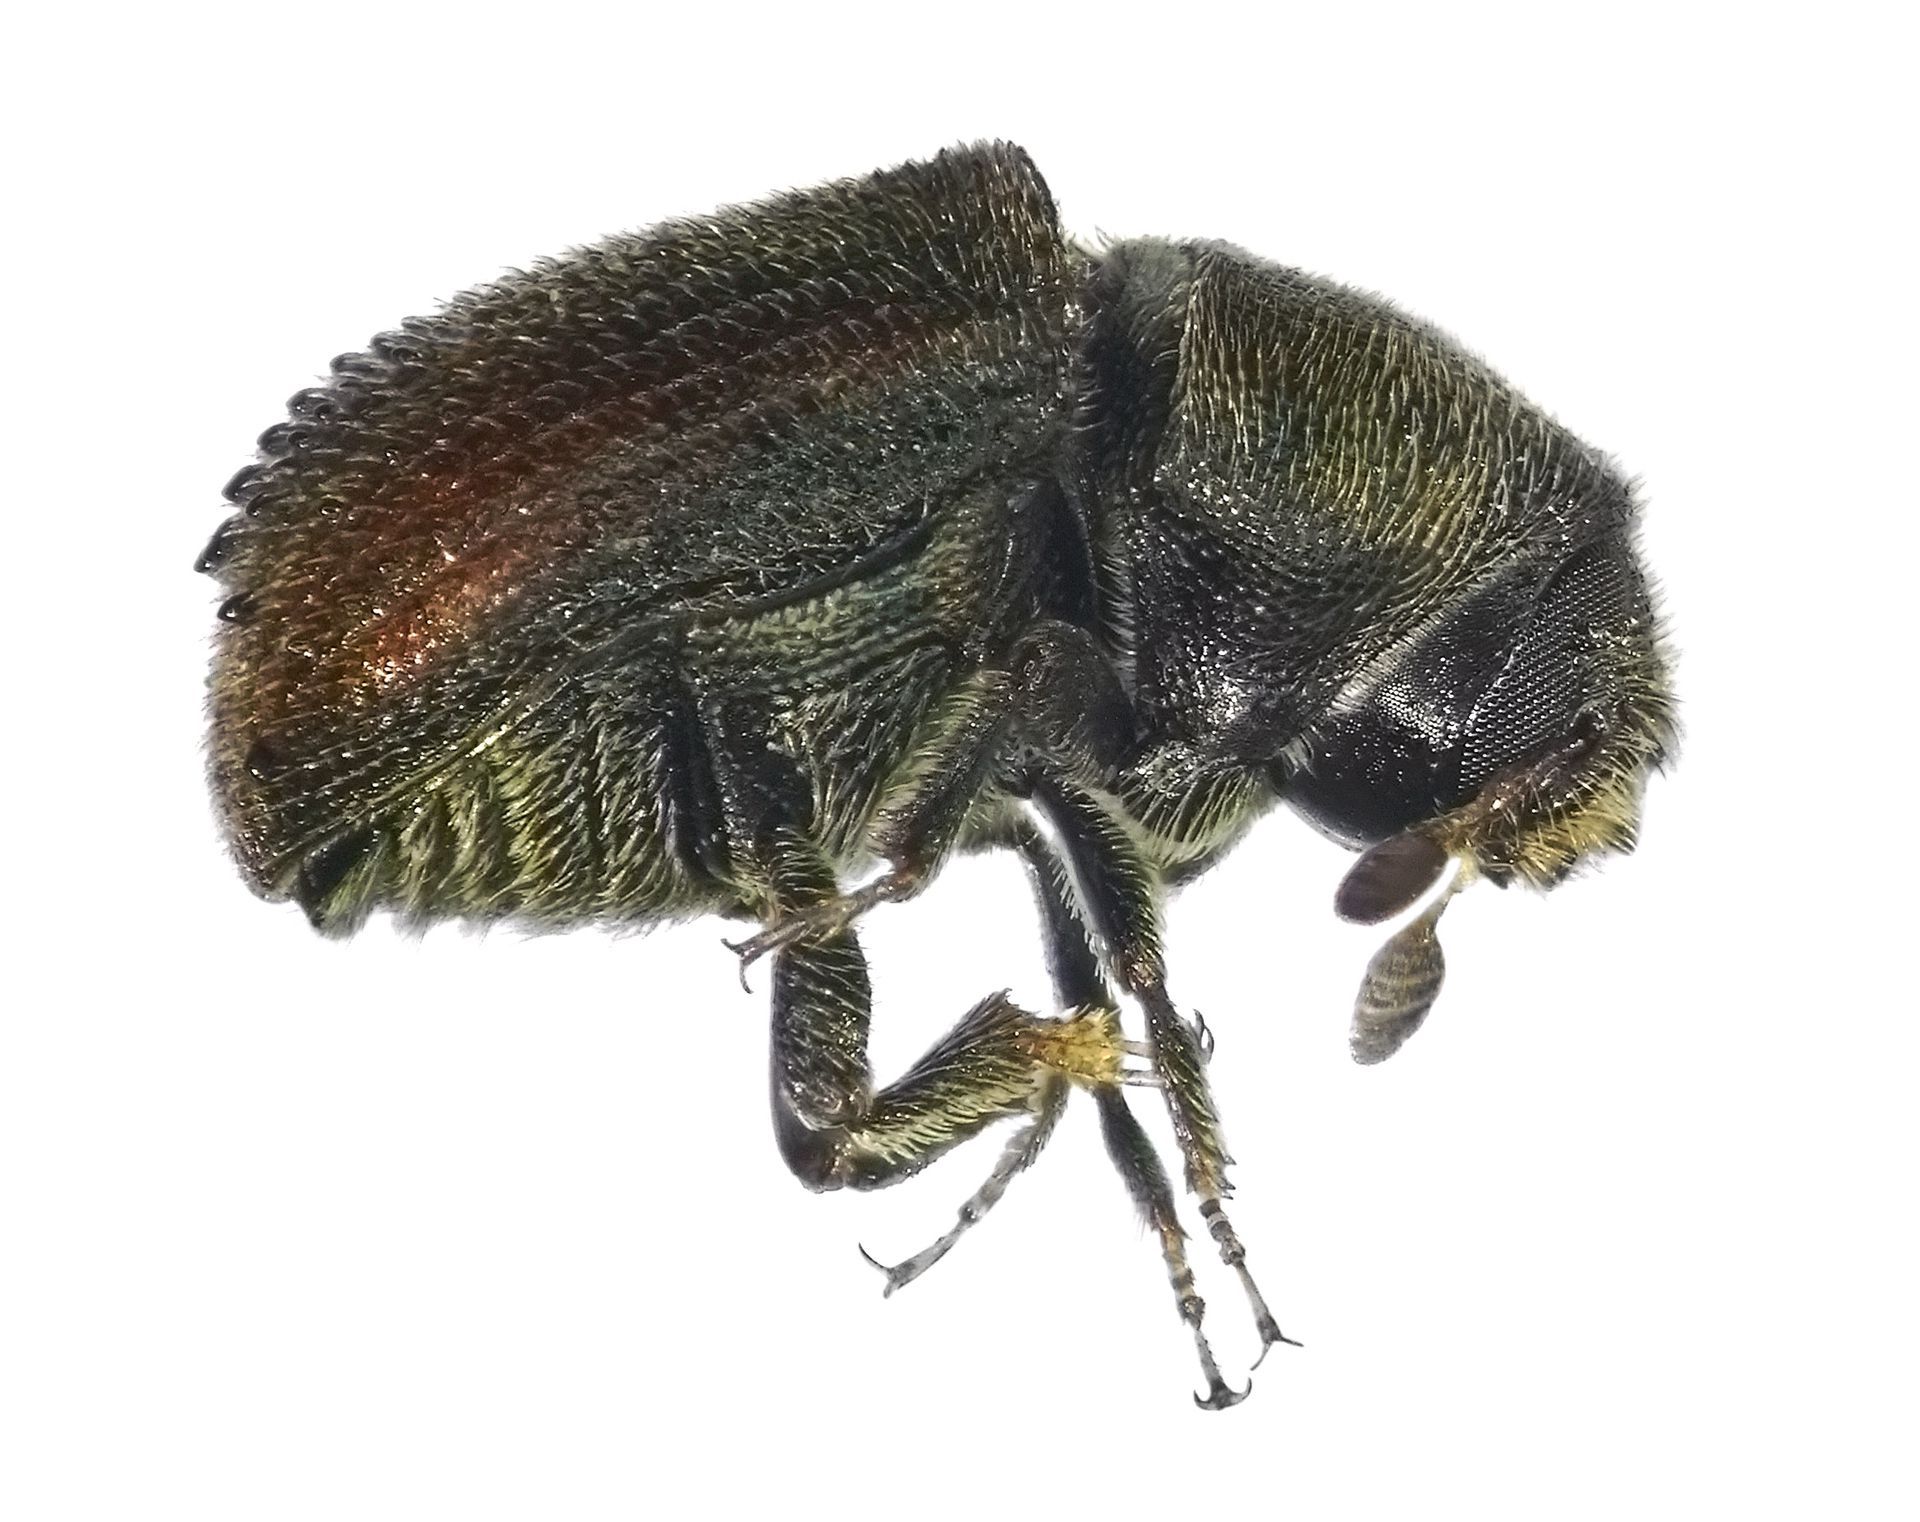 image of bark beetle